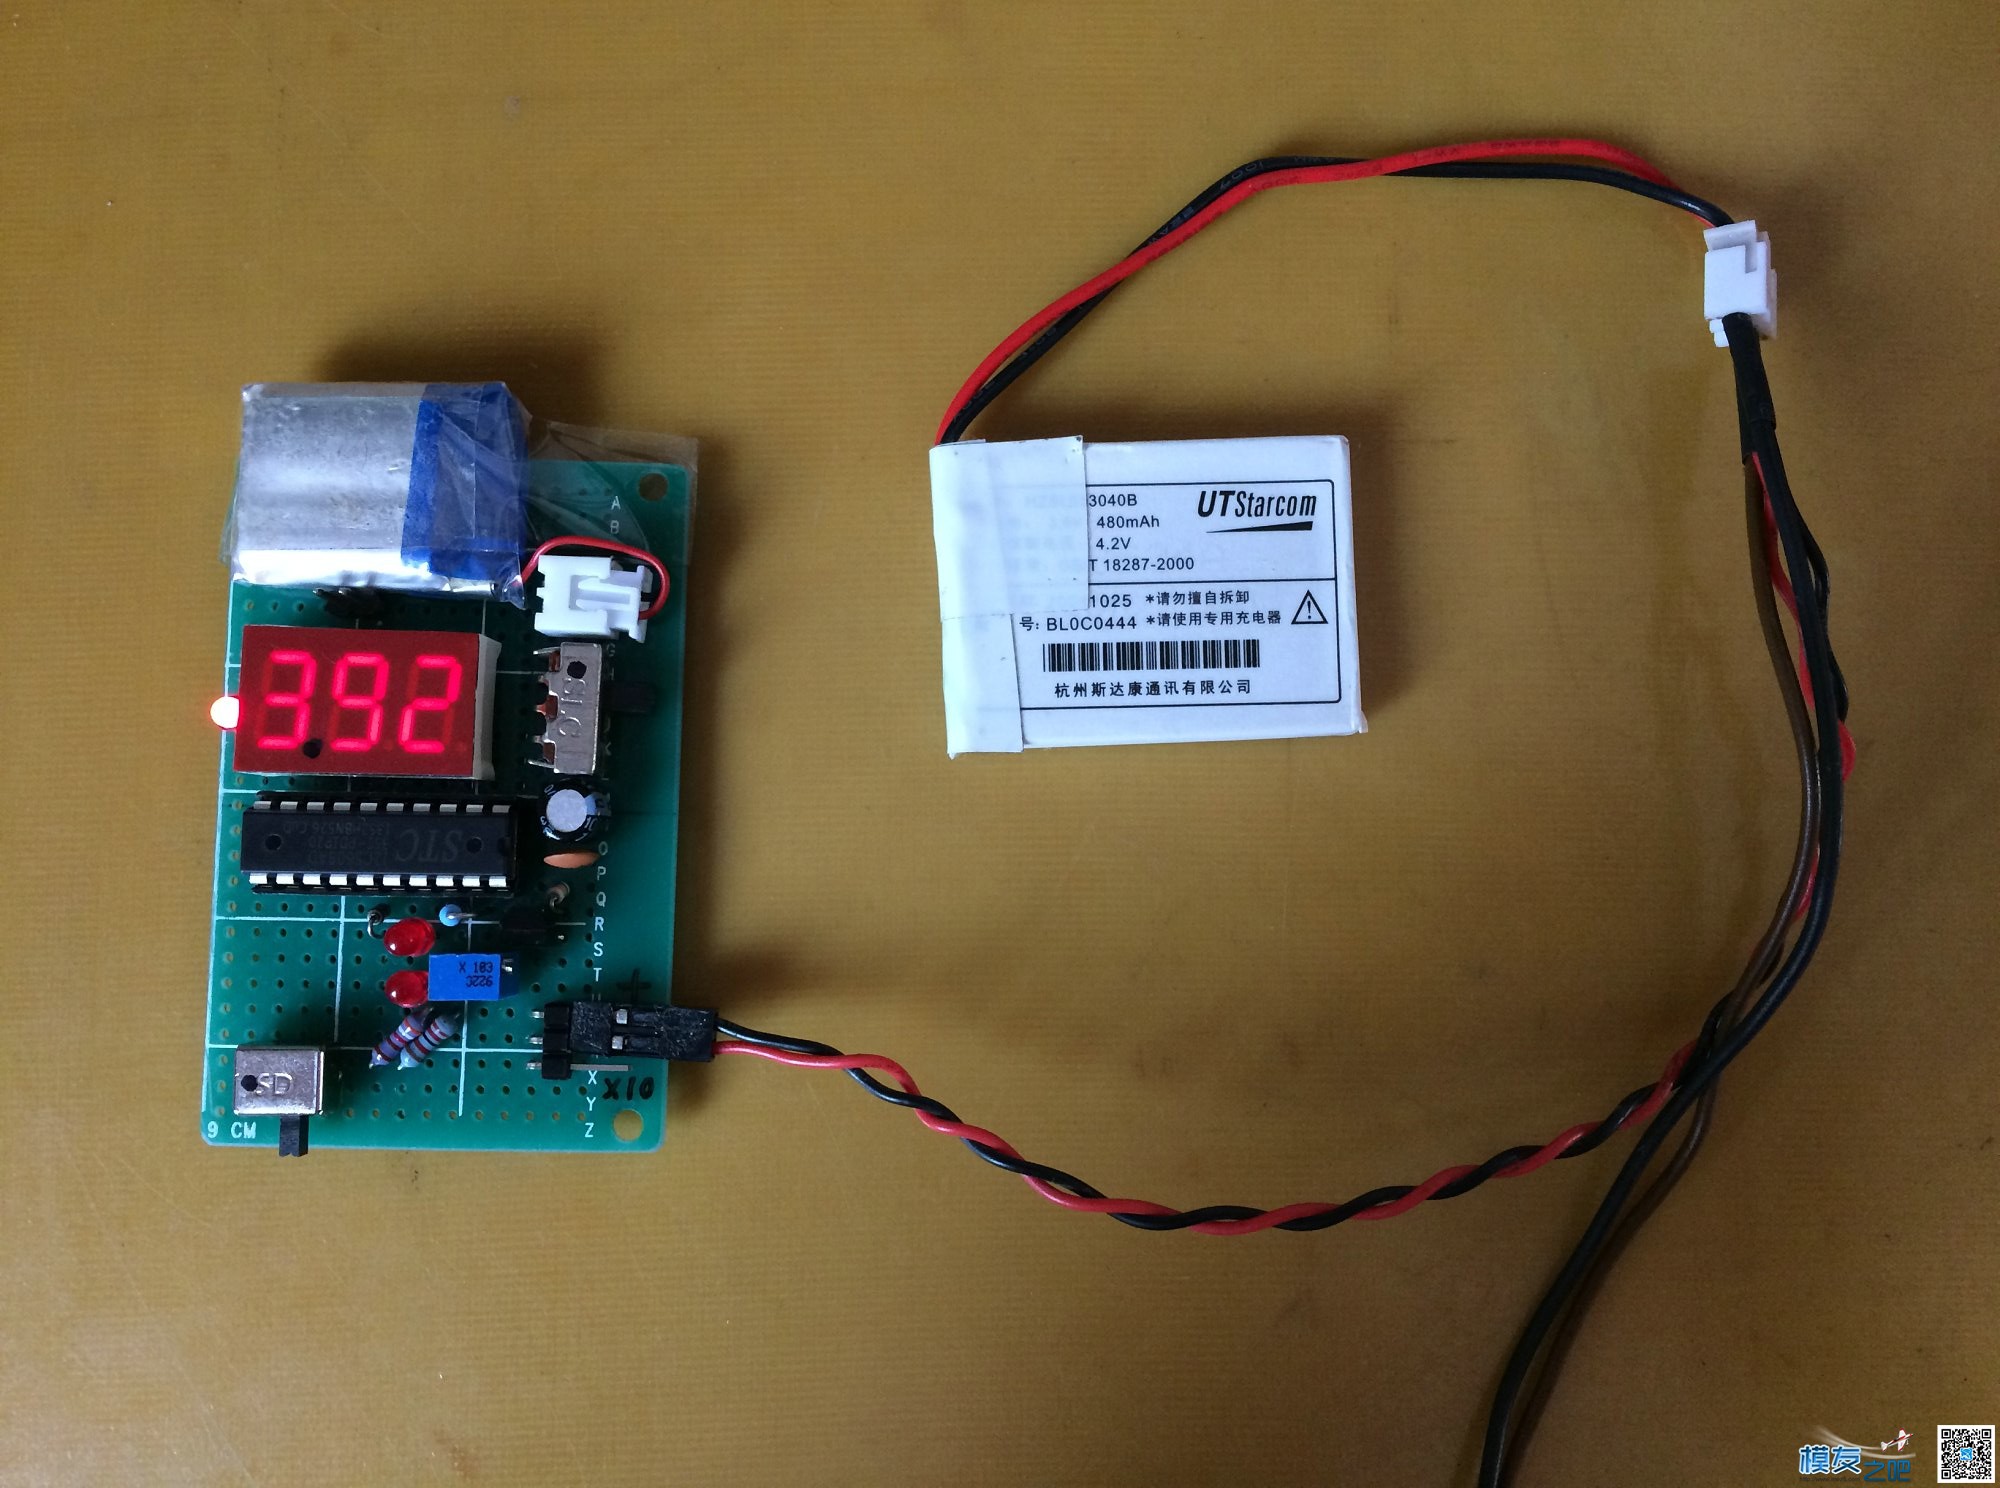 自制正负量程电压表,问题及解决。 电压表 作者:长寿烙铁 2166 